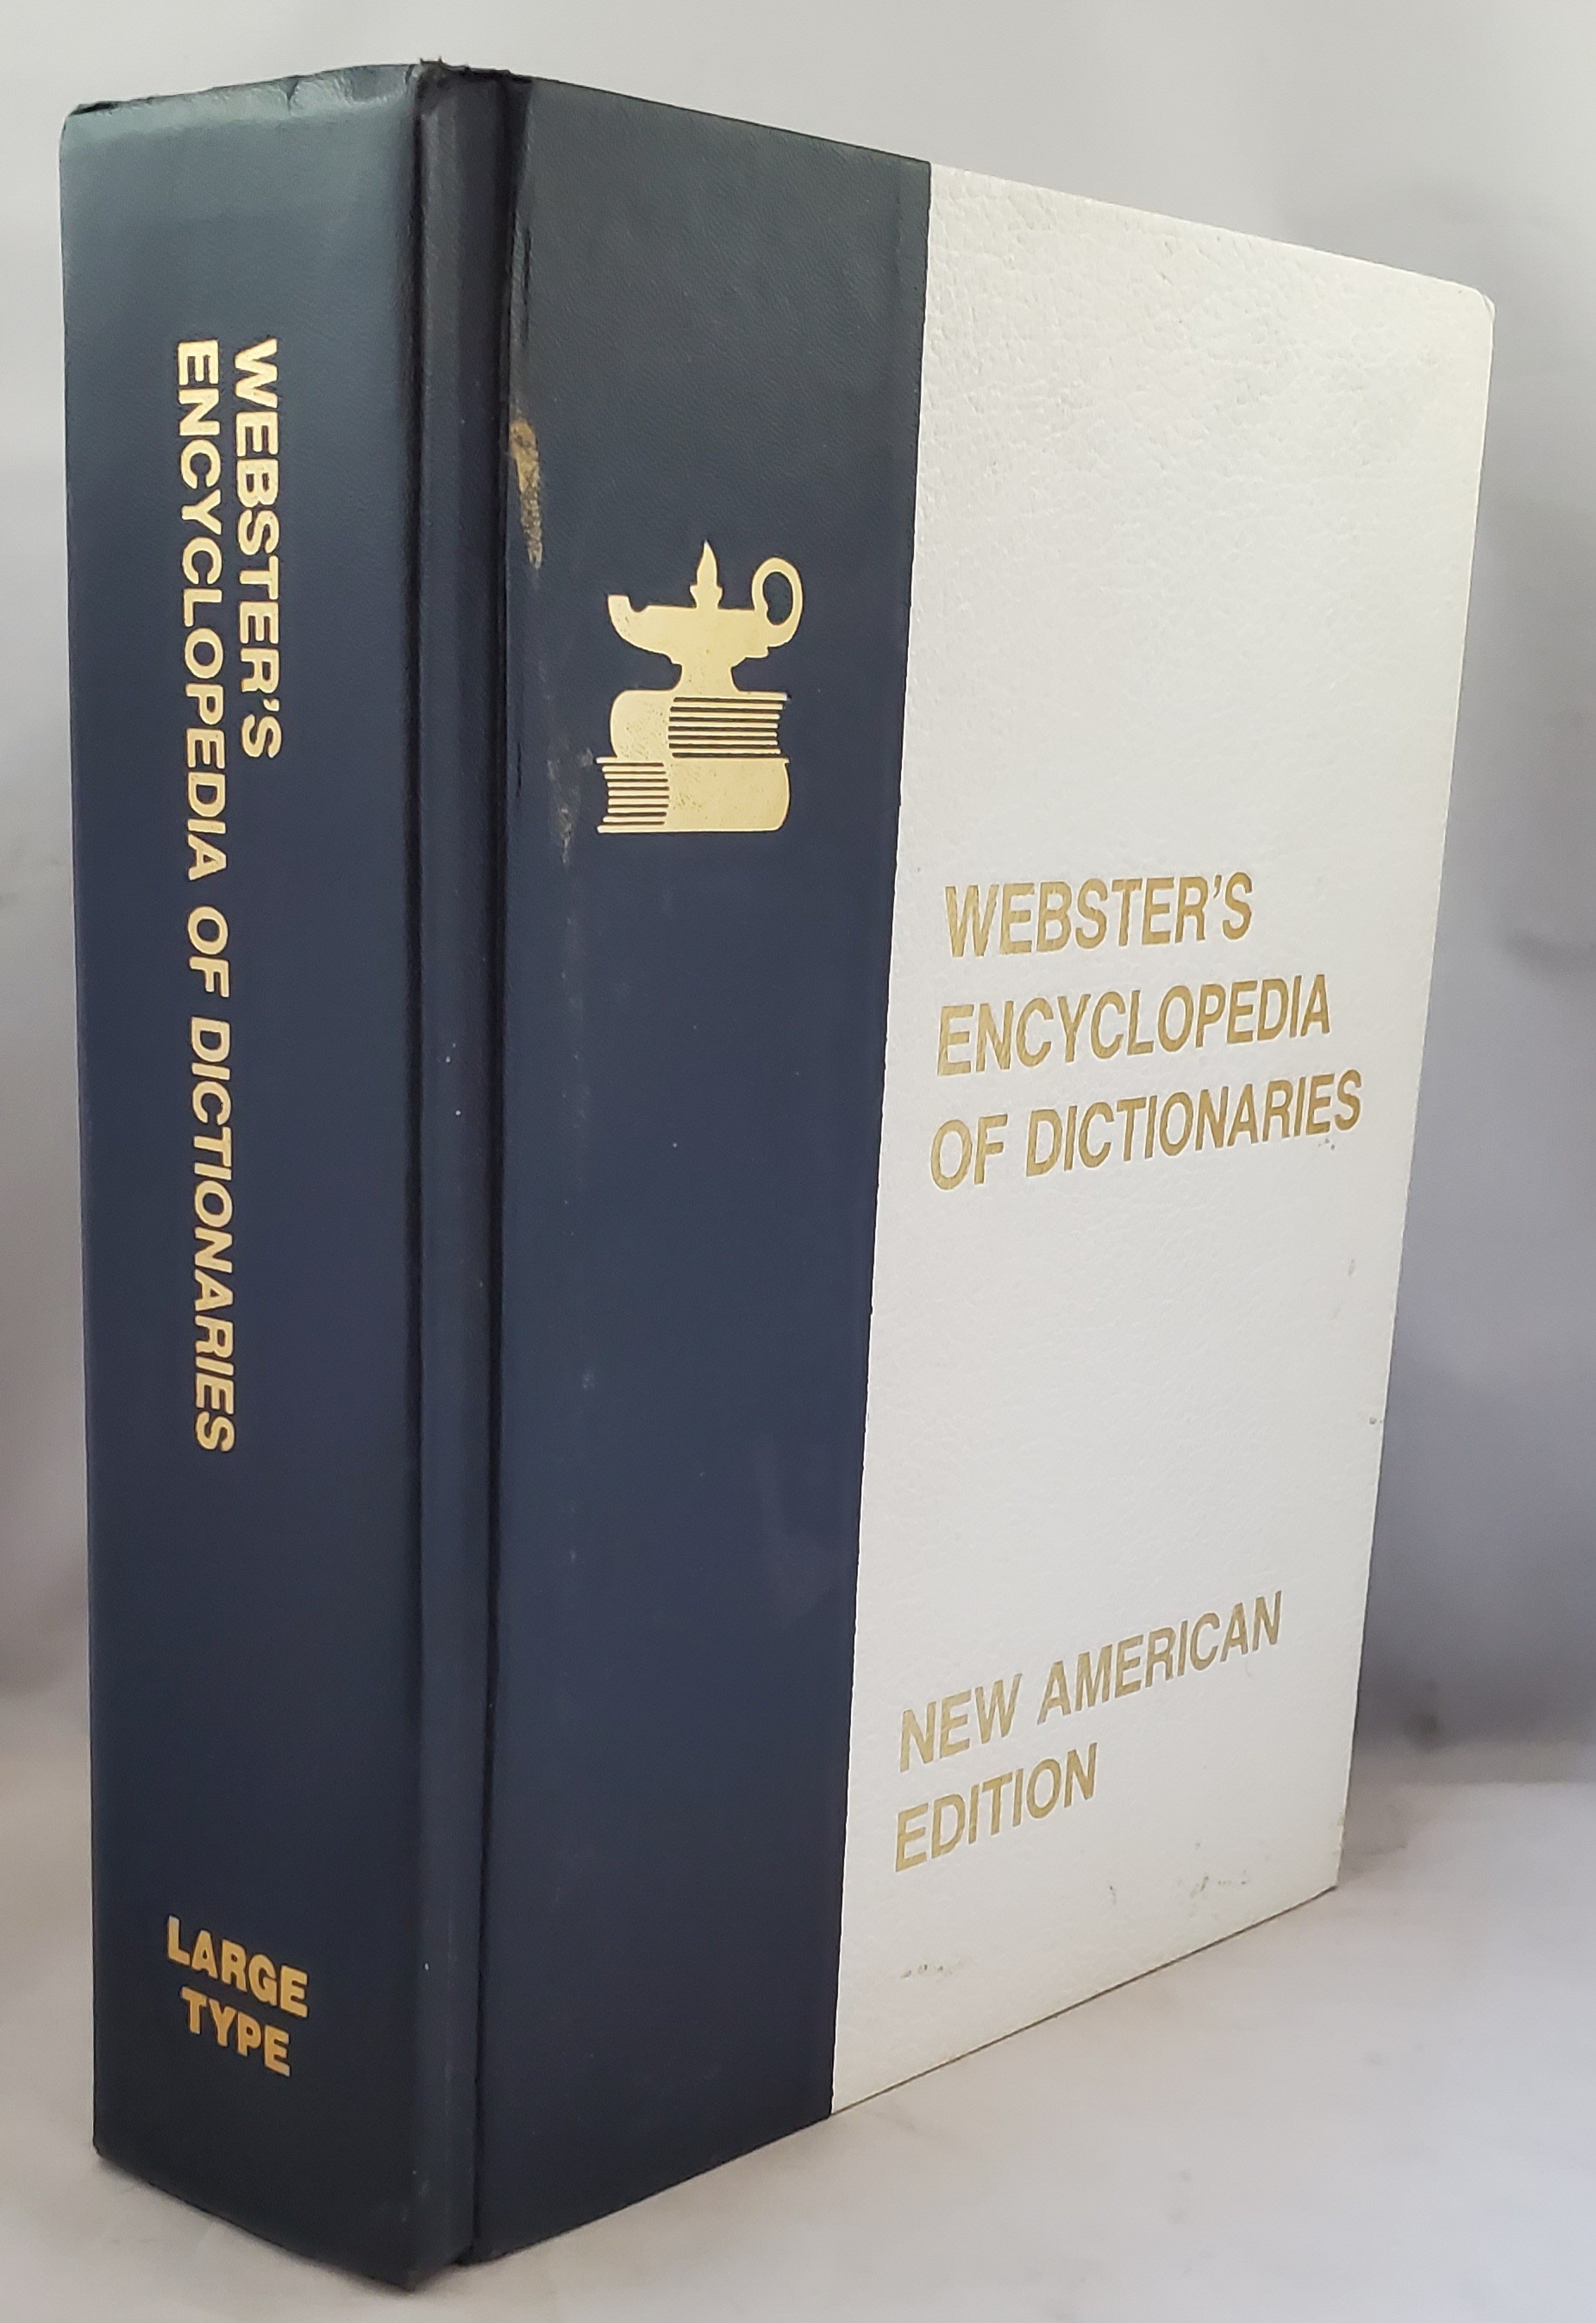 websters encyclopedis of dictionaries